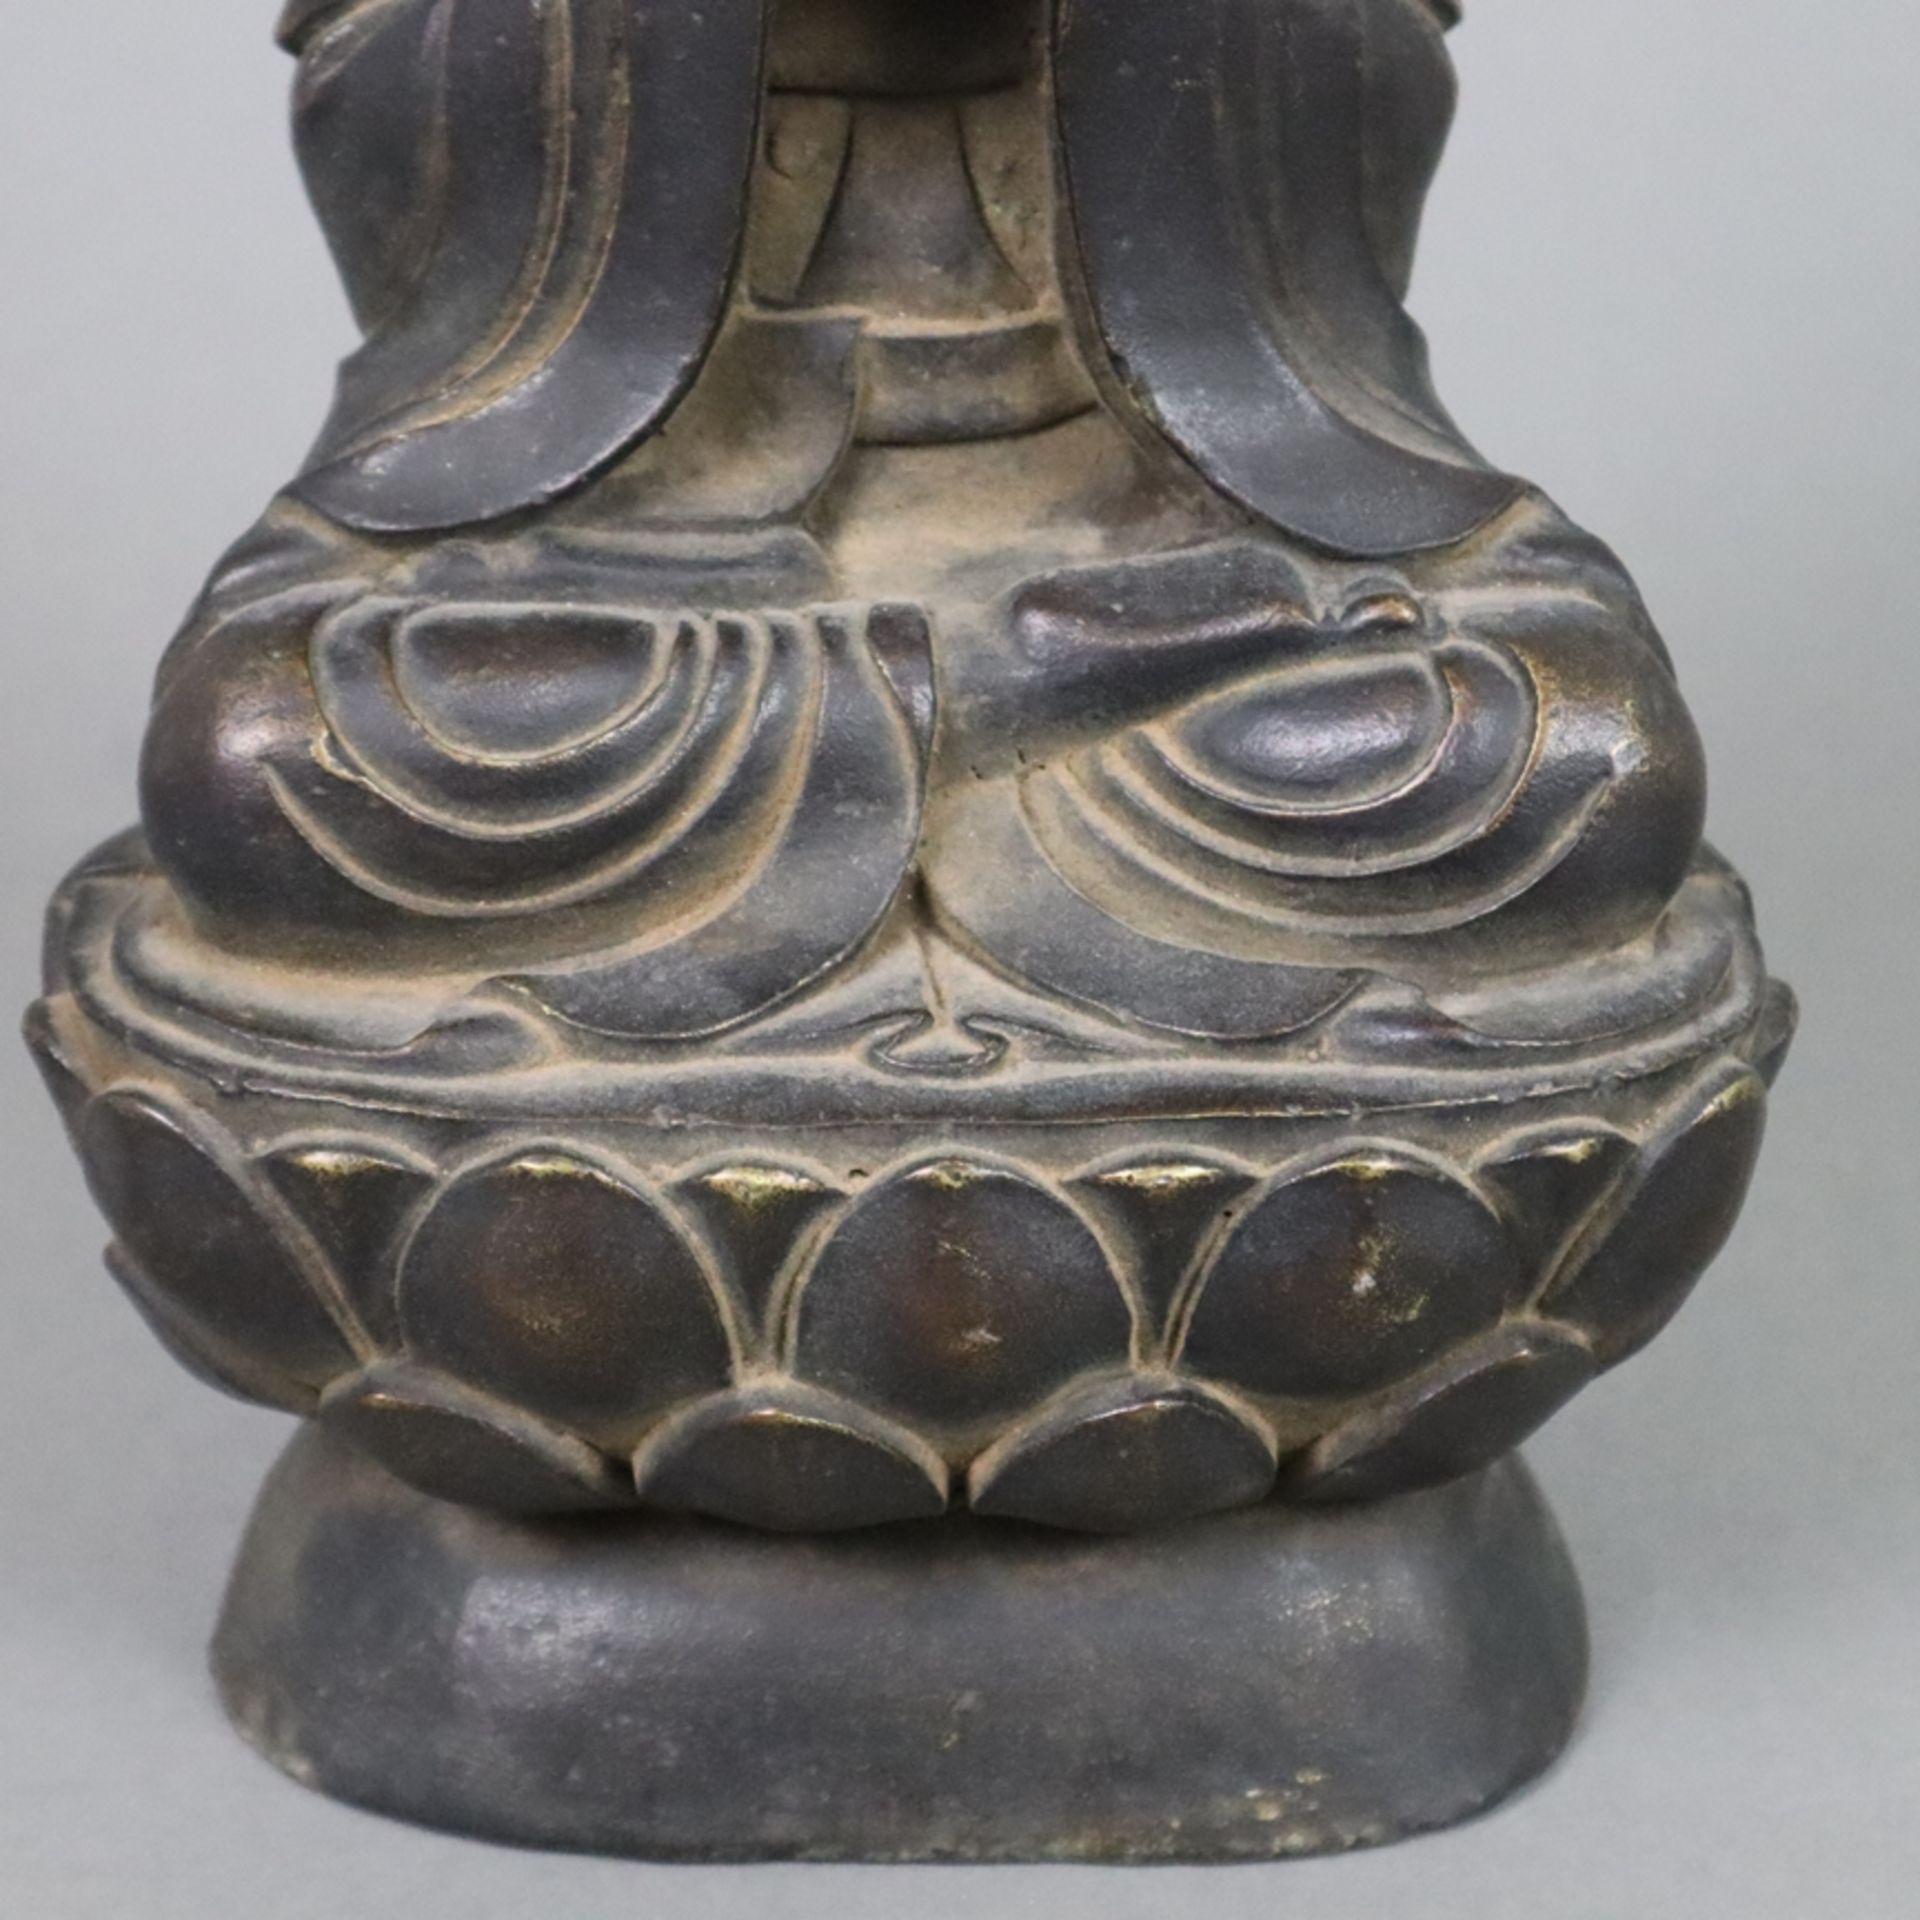 Buddhafigur - China, Bronzelegierung braun patiniert, in Meditationspose auf hohem Lotossockel sitz - Bild 5 aus 9